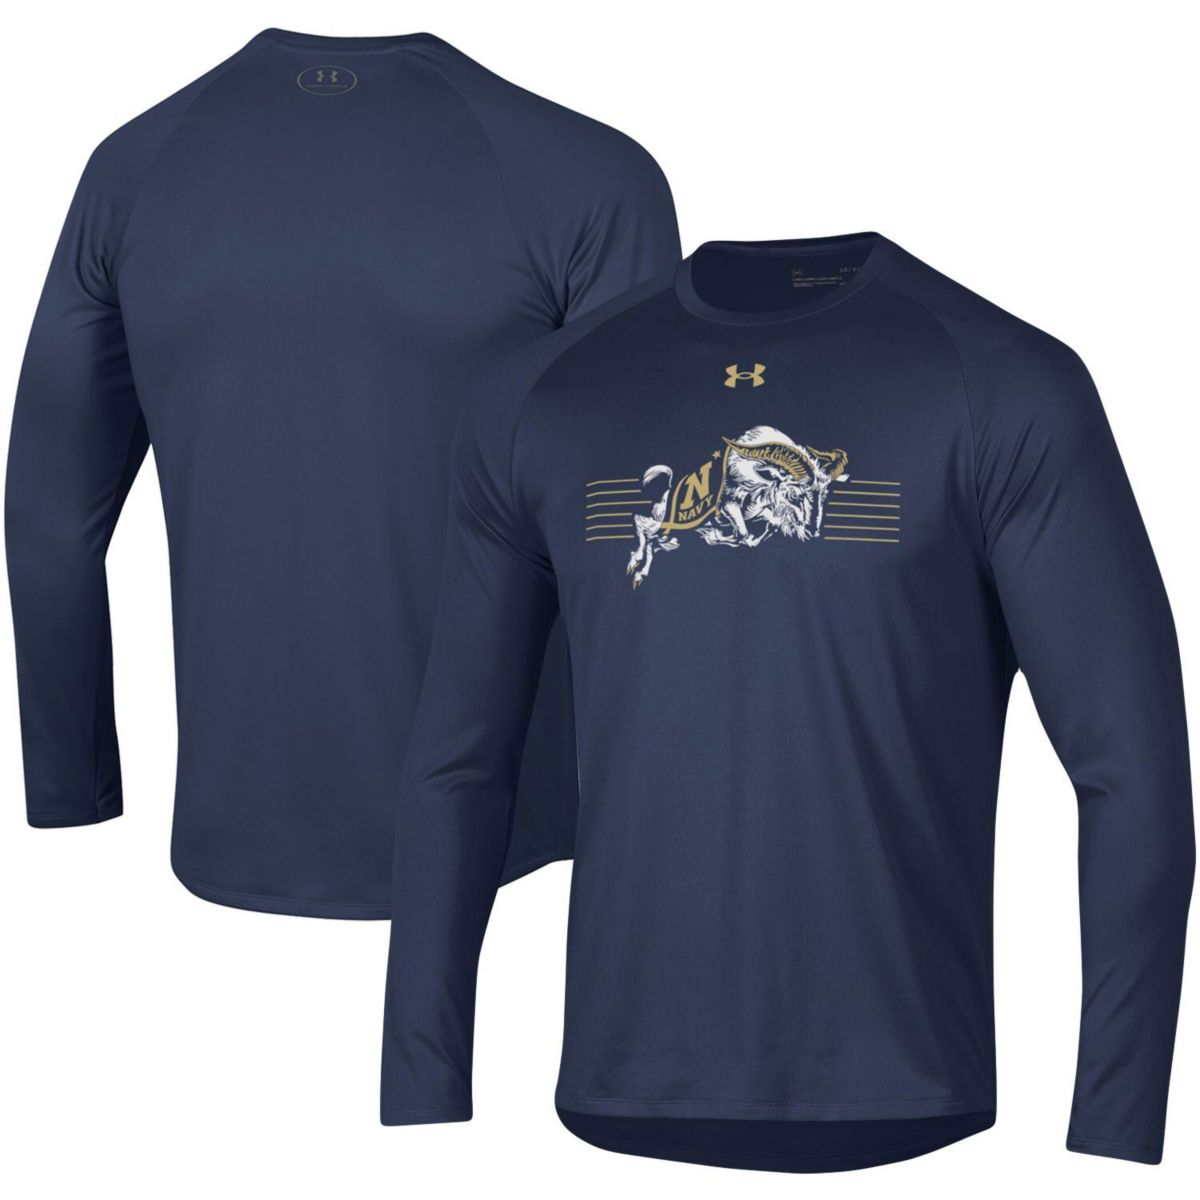 Мужская футболка с длинным рукавом реглан Under Armour Navy Navy Midshipmen в полоску с логотипом Under Armour